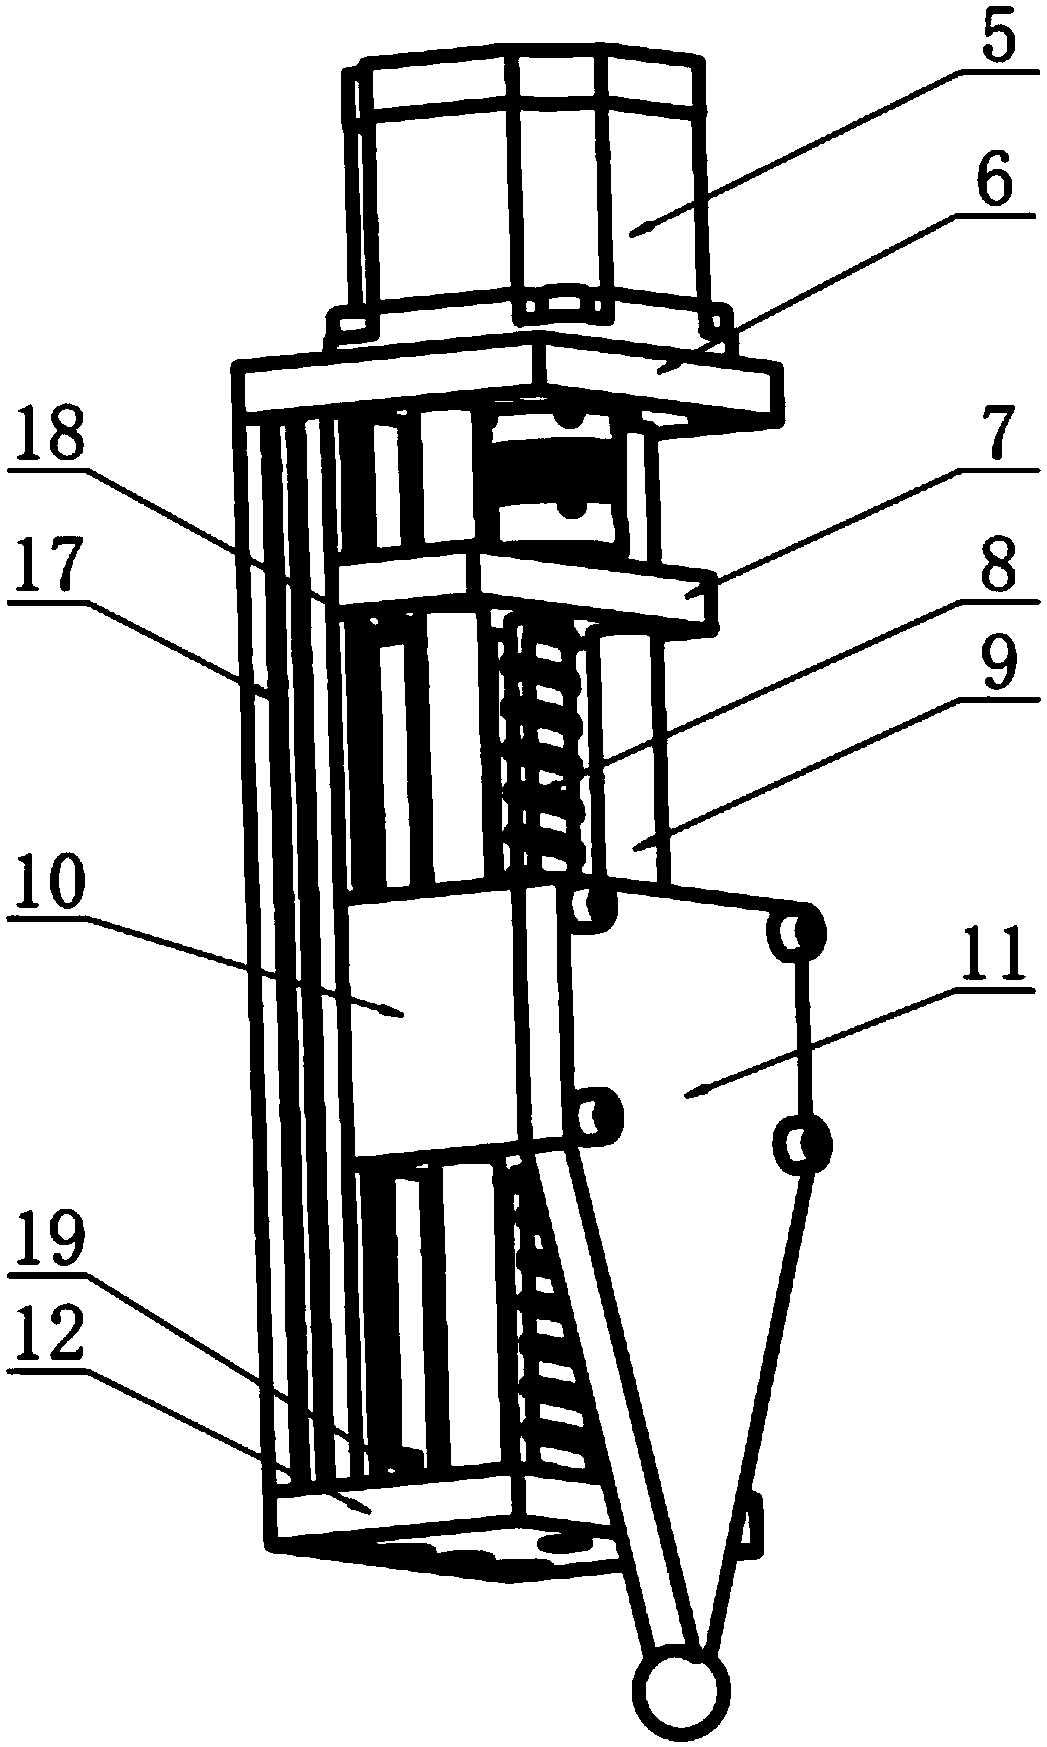 Electromechanical automatic leveling rotating base